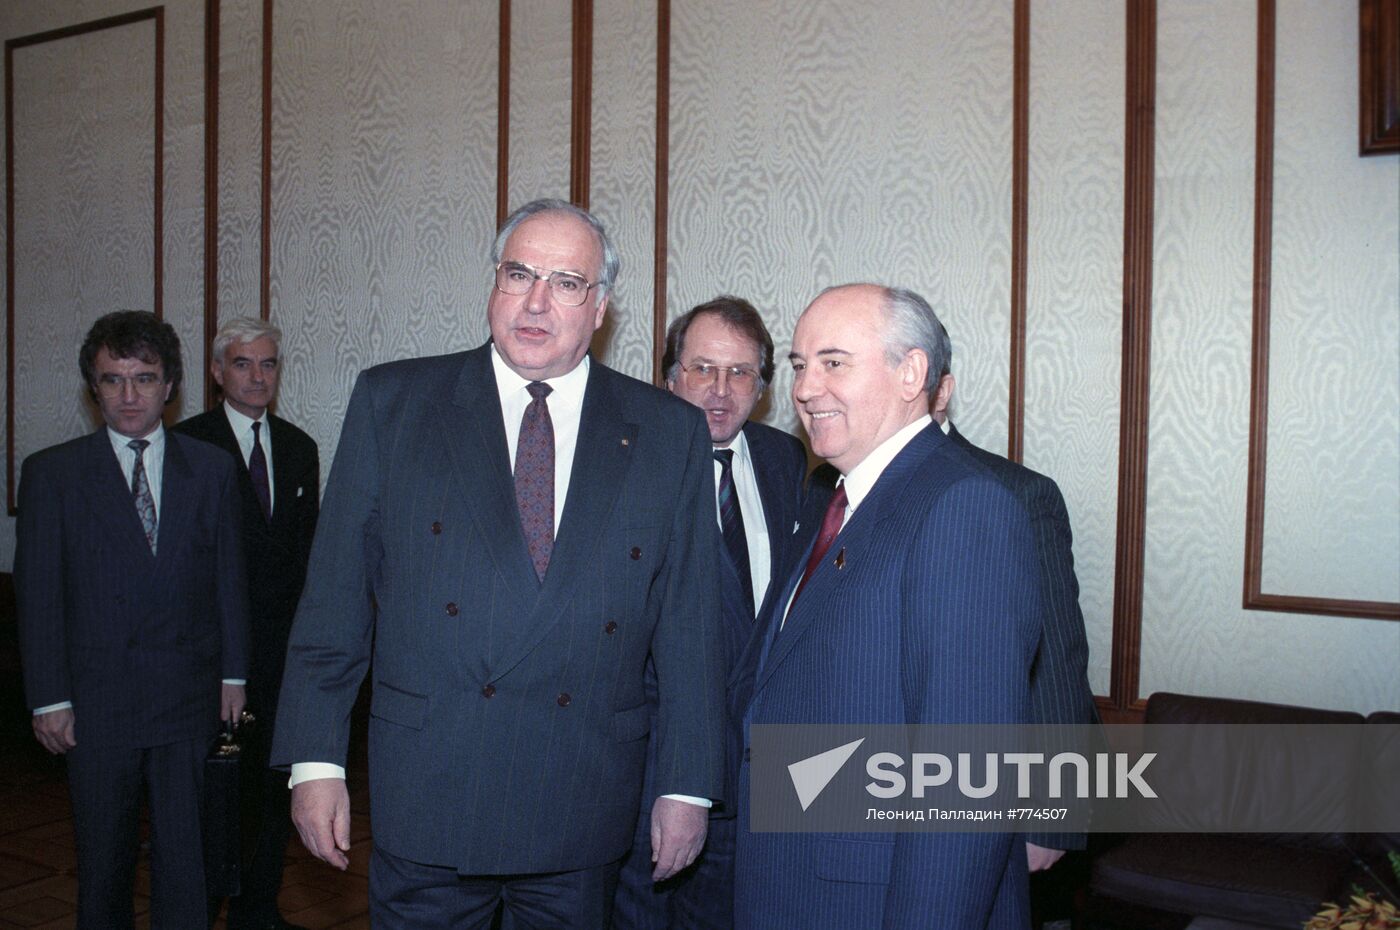 Mikhail Gorbachev and Helmut Kohl